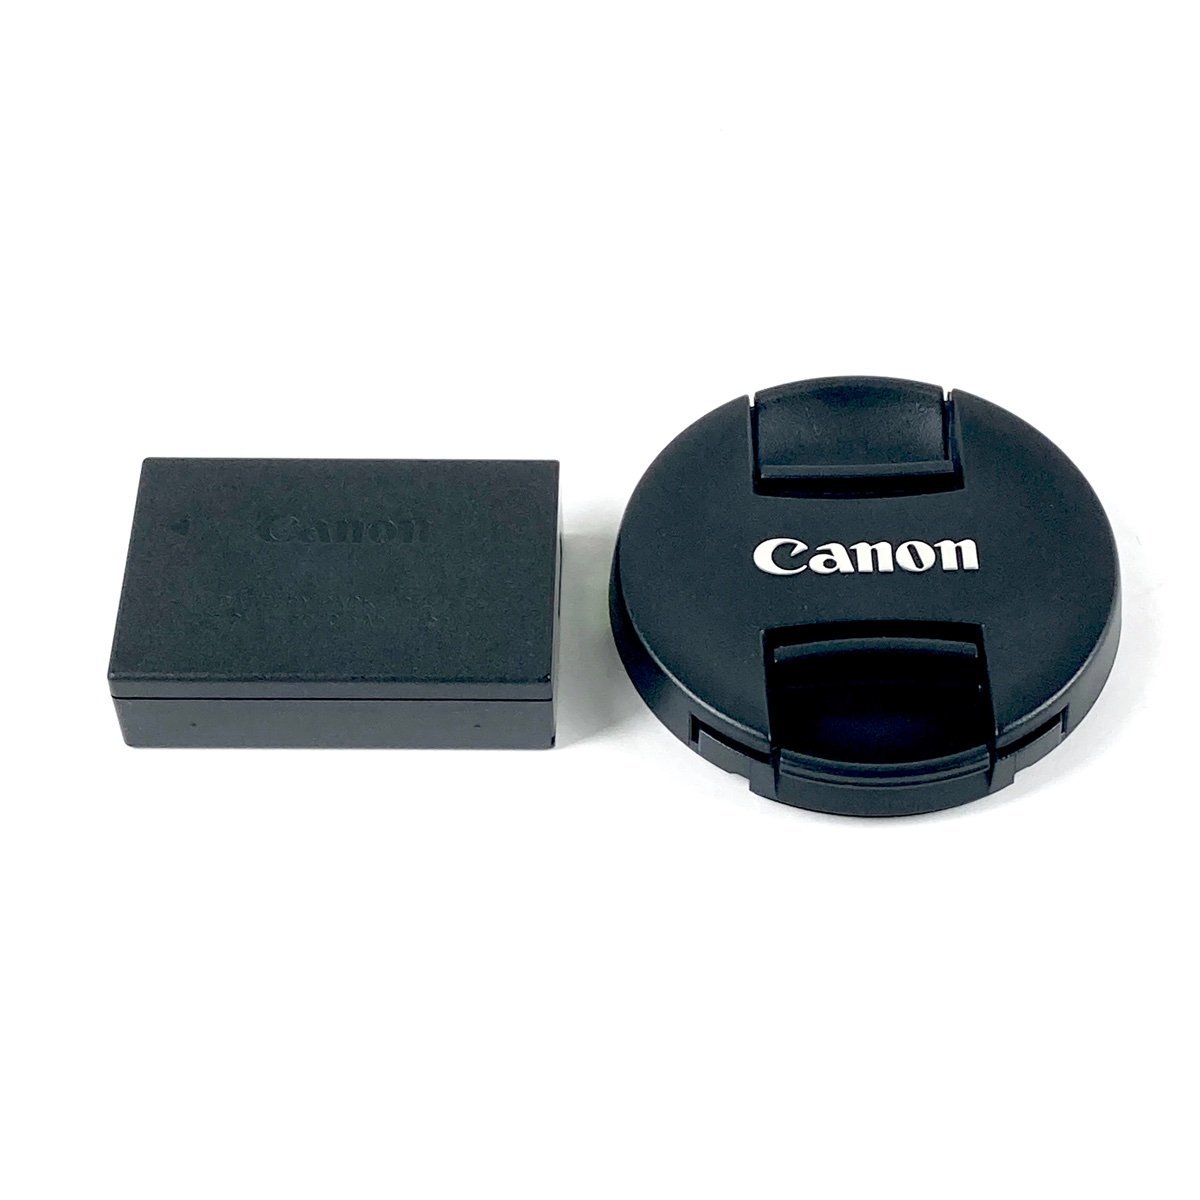 キヤノン Canon EOS Kiss X9i レンズキット デジタル 一眼レフカメラ 【中古】_バイセル 31051_10